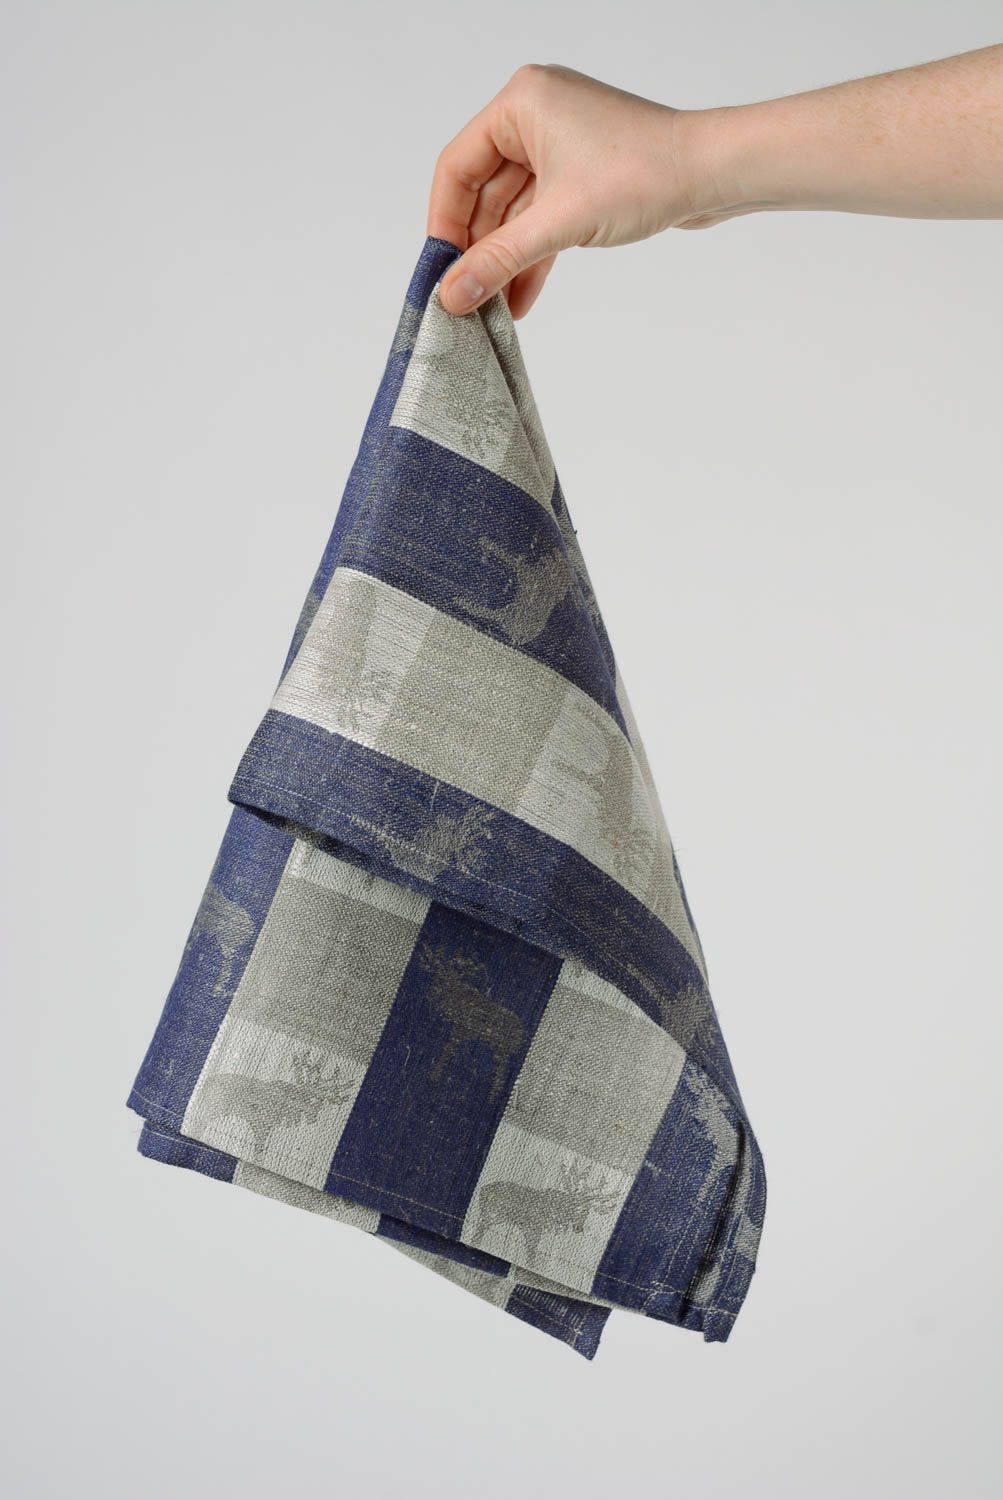 Jolie serviette de cuisine en tissu naturel de lin faite main décoration photo 4